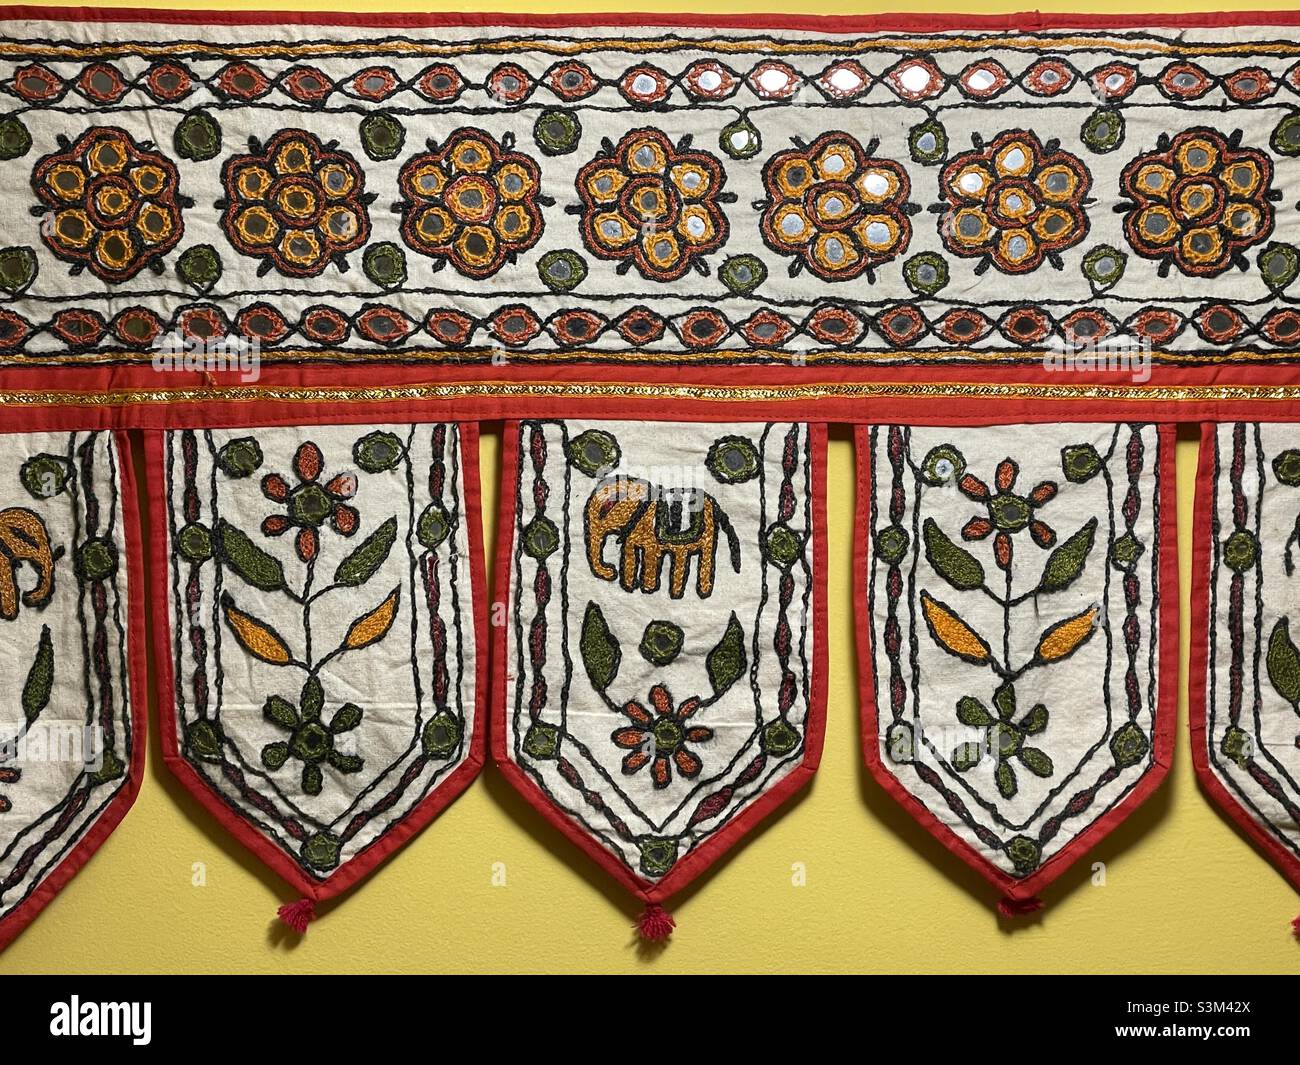 Eine indische Stickerei im traditionellen Stil mit Spiegelarbeiten, wie sie über einer Tür aufgehängt werden könnte. Zu den Motiven gehören Elefanten und Blumen Stockfoto